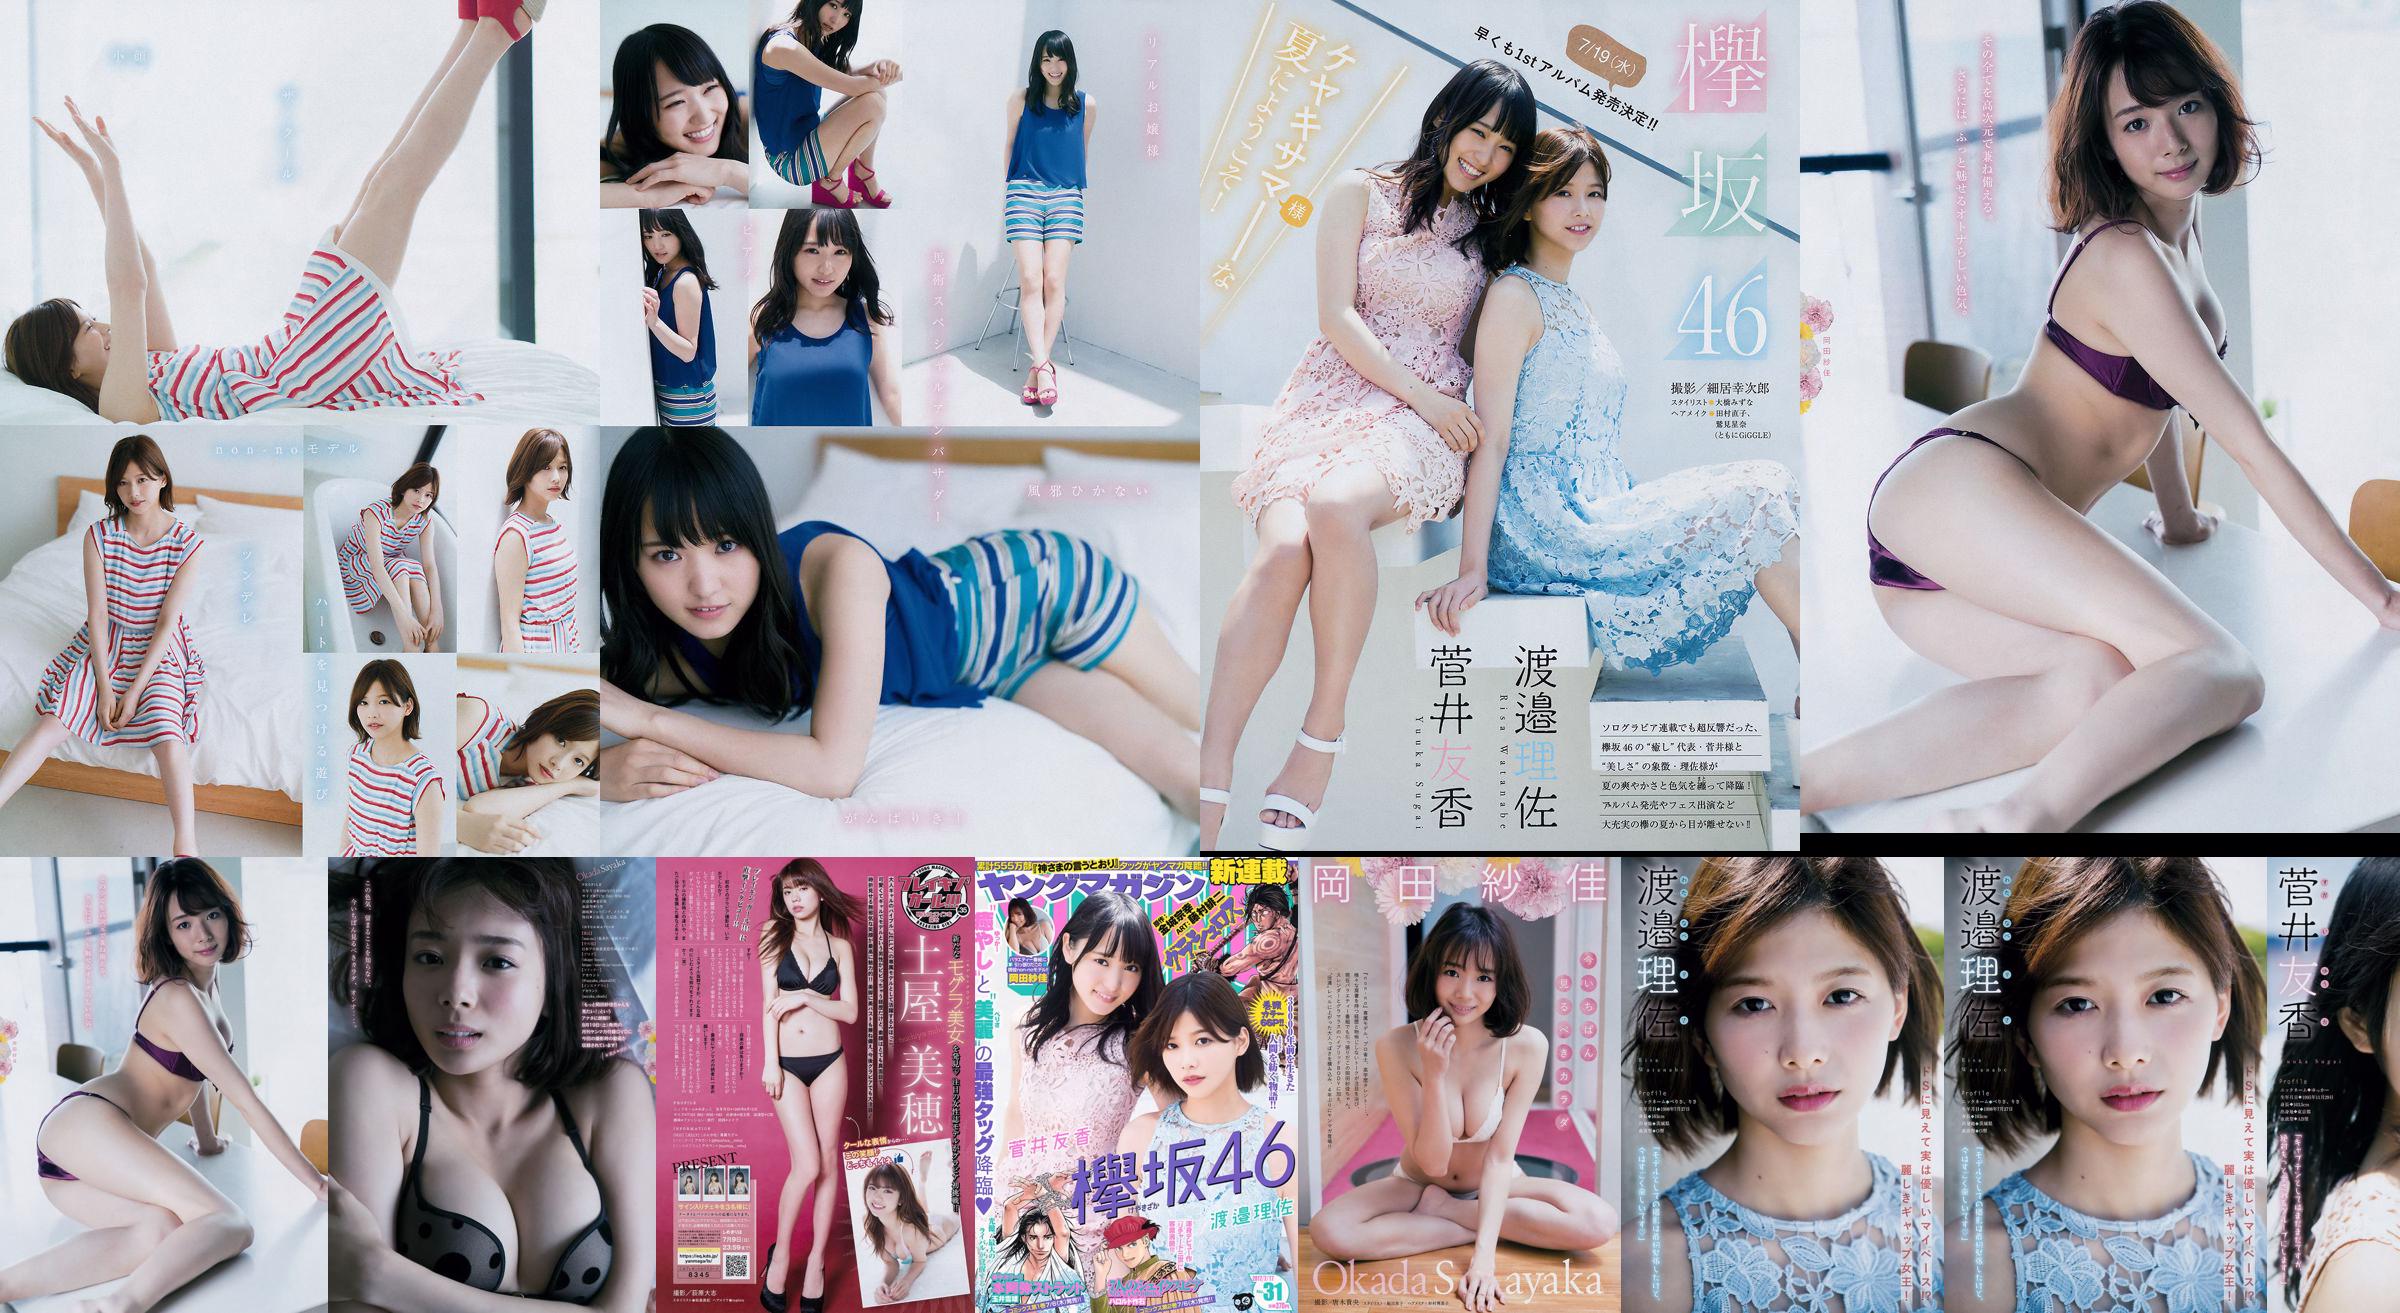 [Young Magazine] Watanabe Risa, Sugai Yuka, Okada Saika 2017 No.31 Photo Magazine No.b6262c Página 6